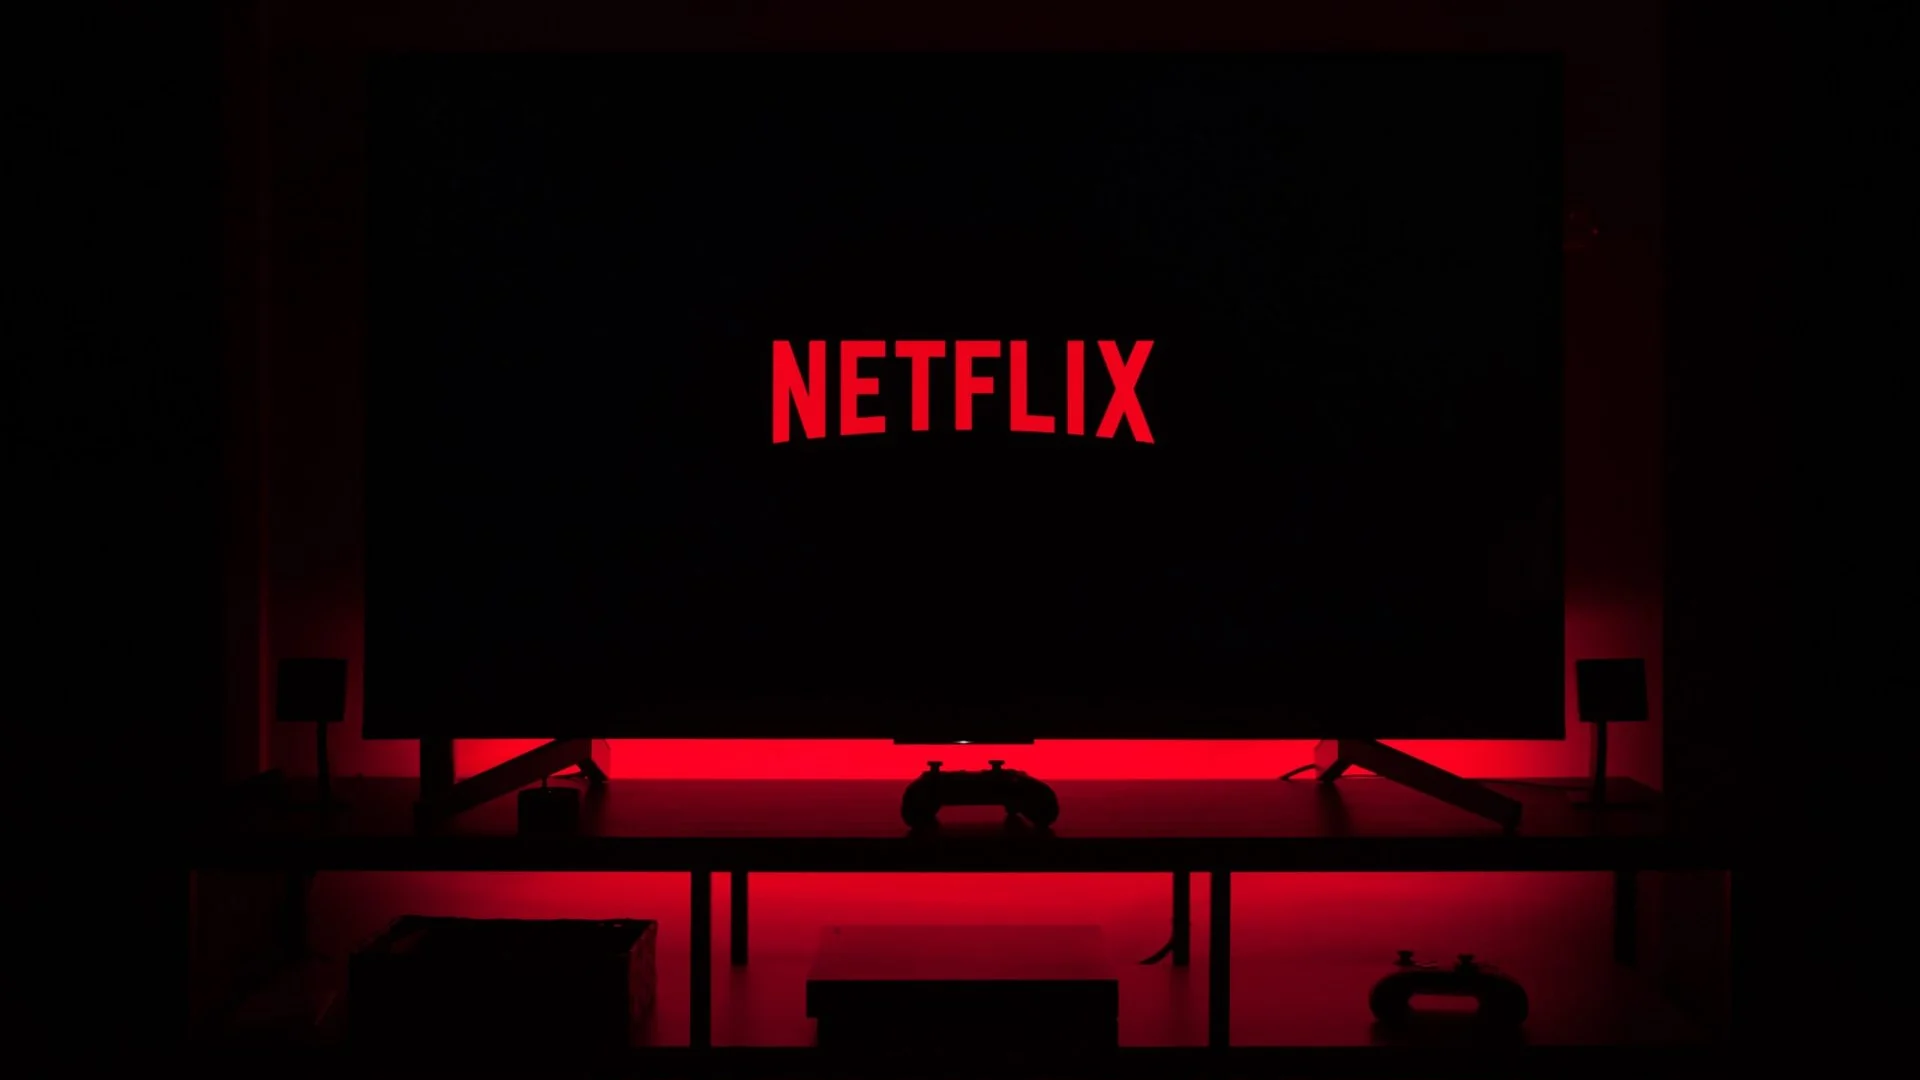 Netflix já começou a bloquear algumas televisões fora da morada principal